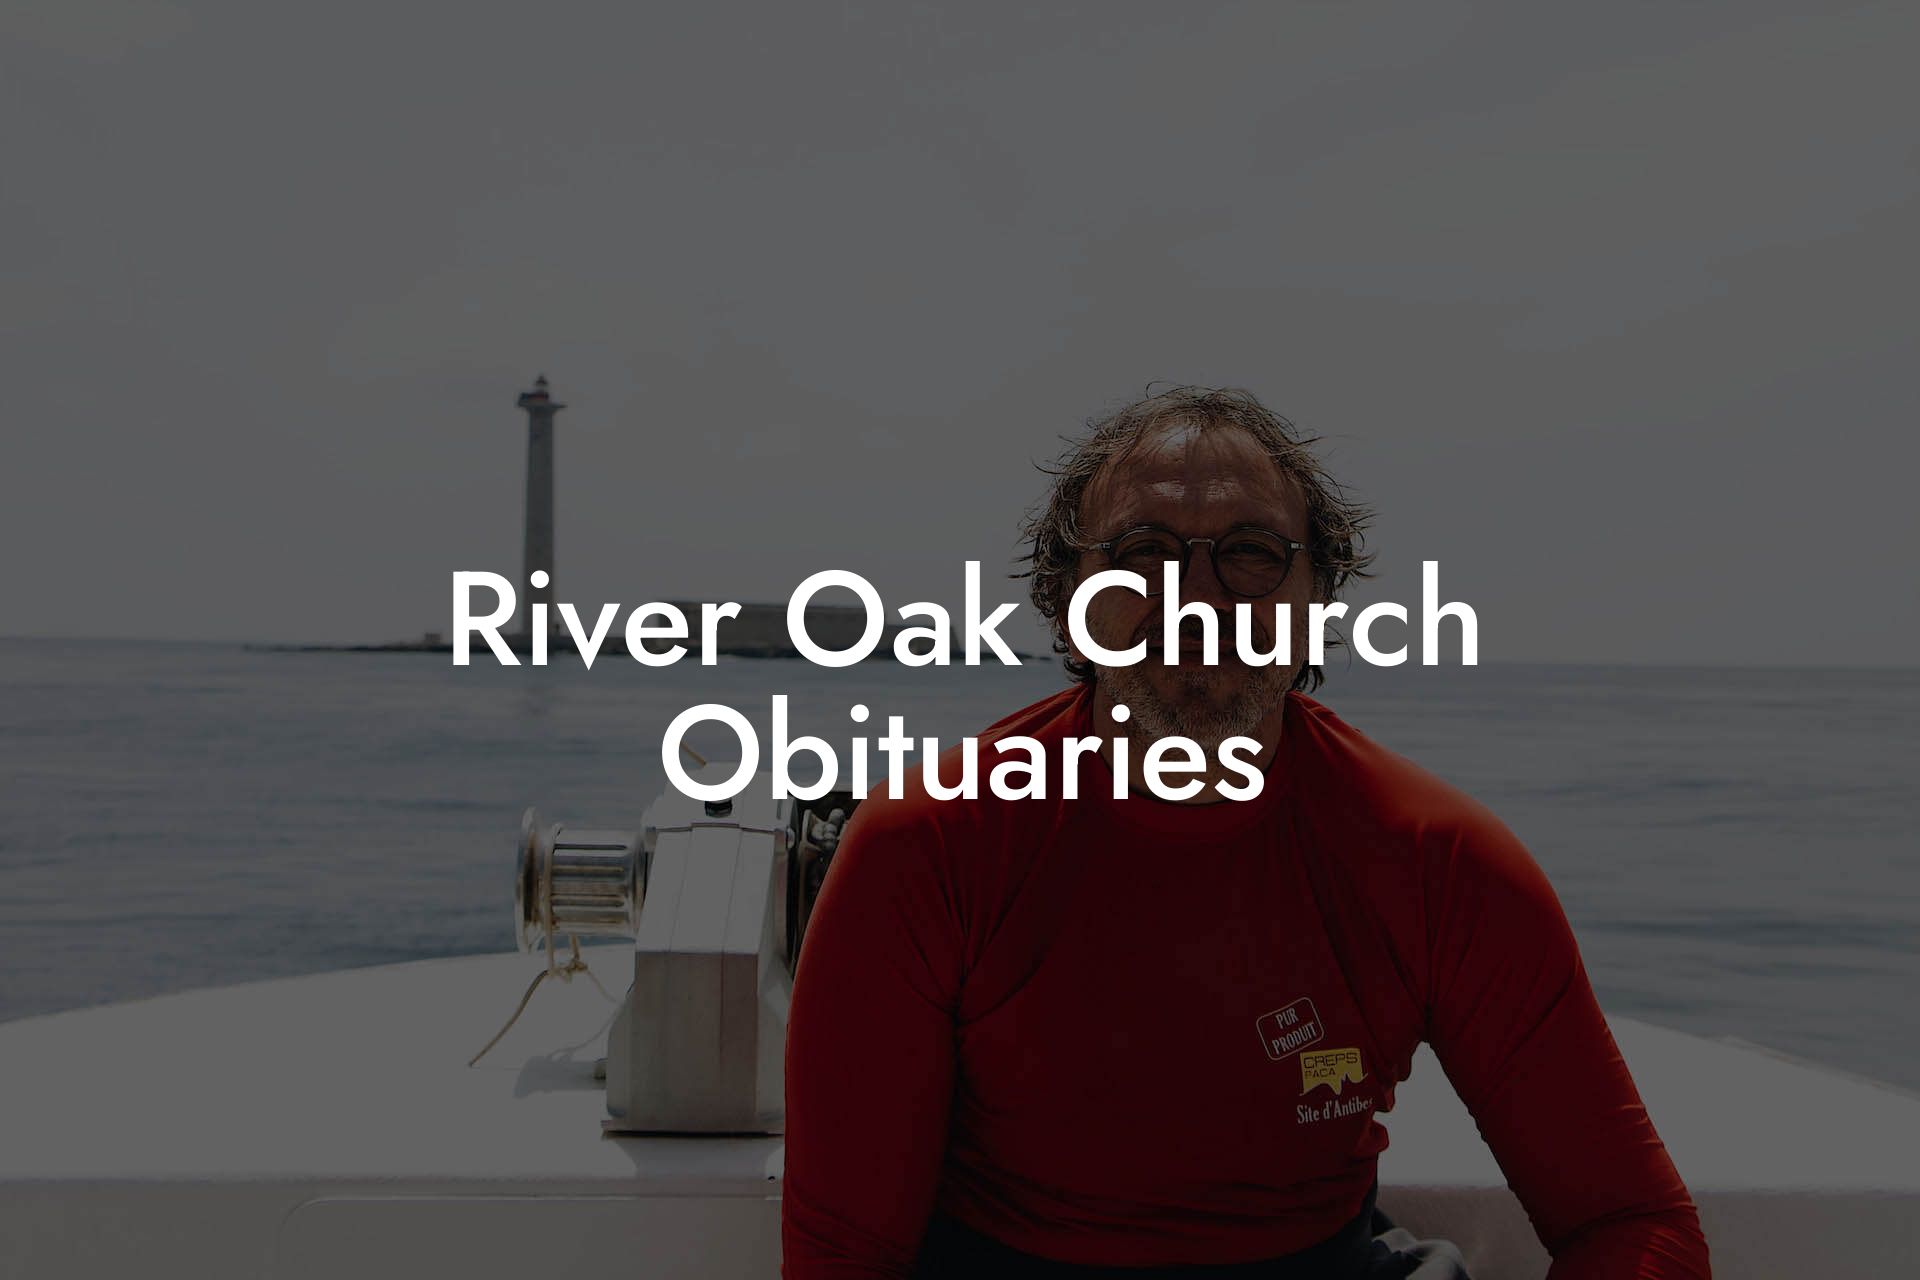 River Oak Church Obituaries